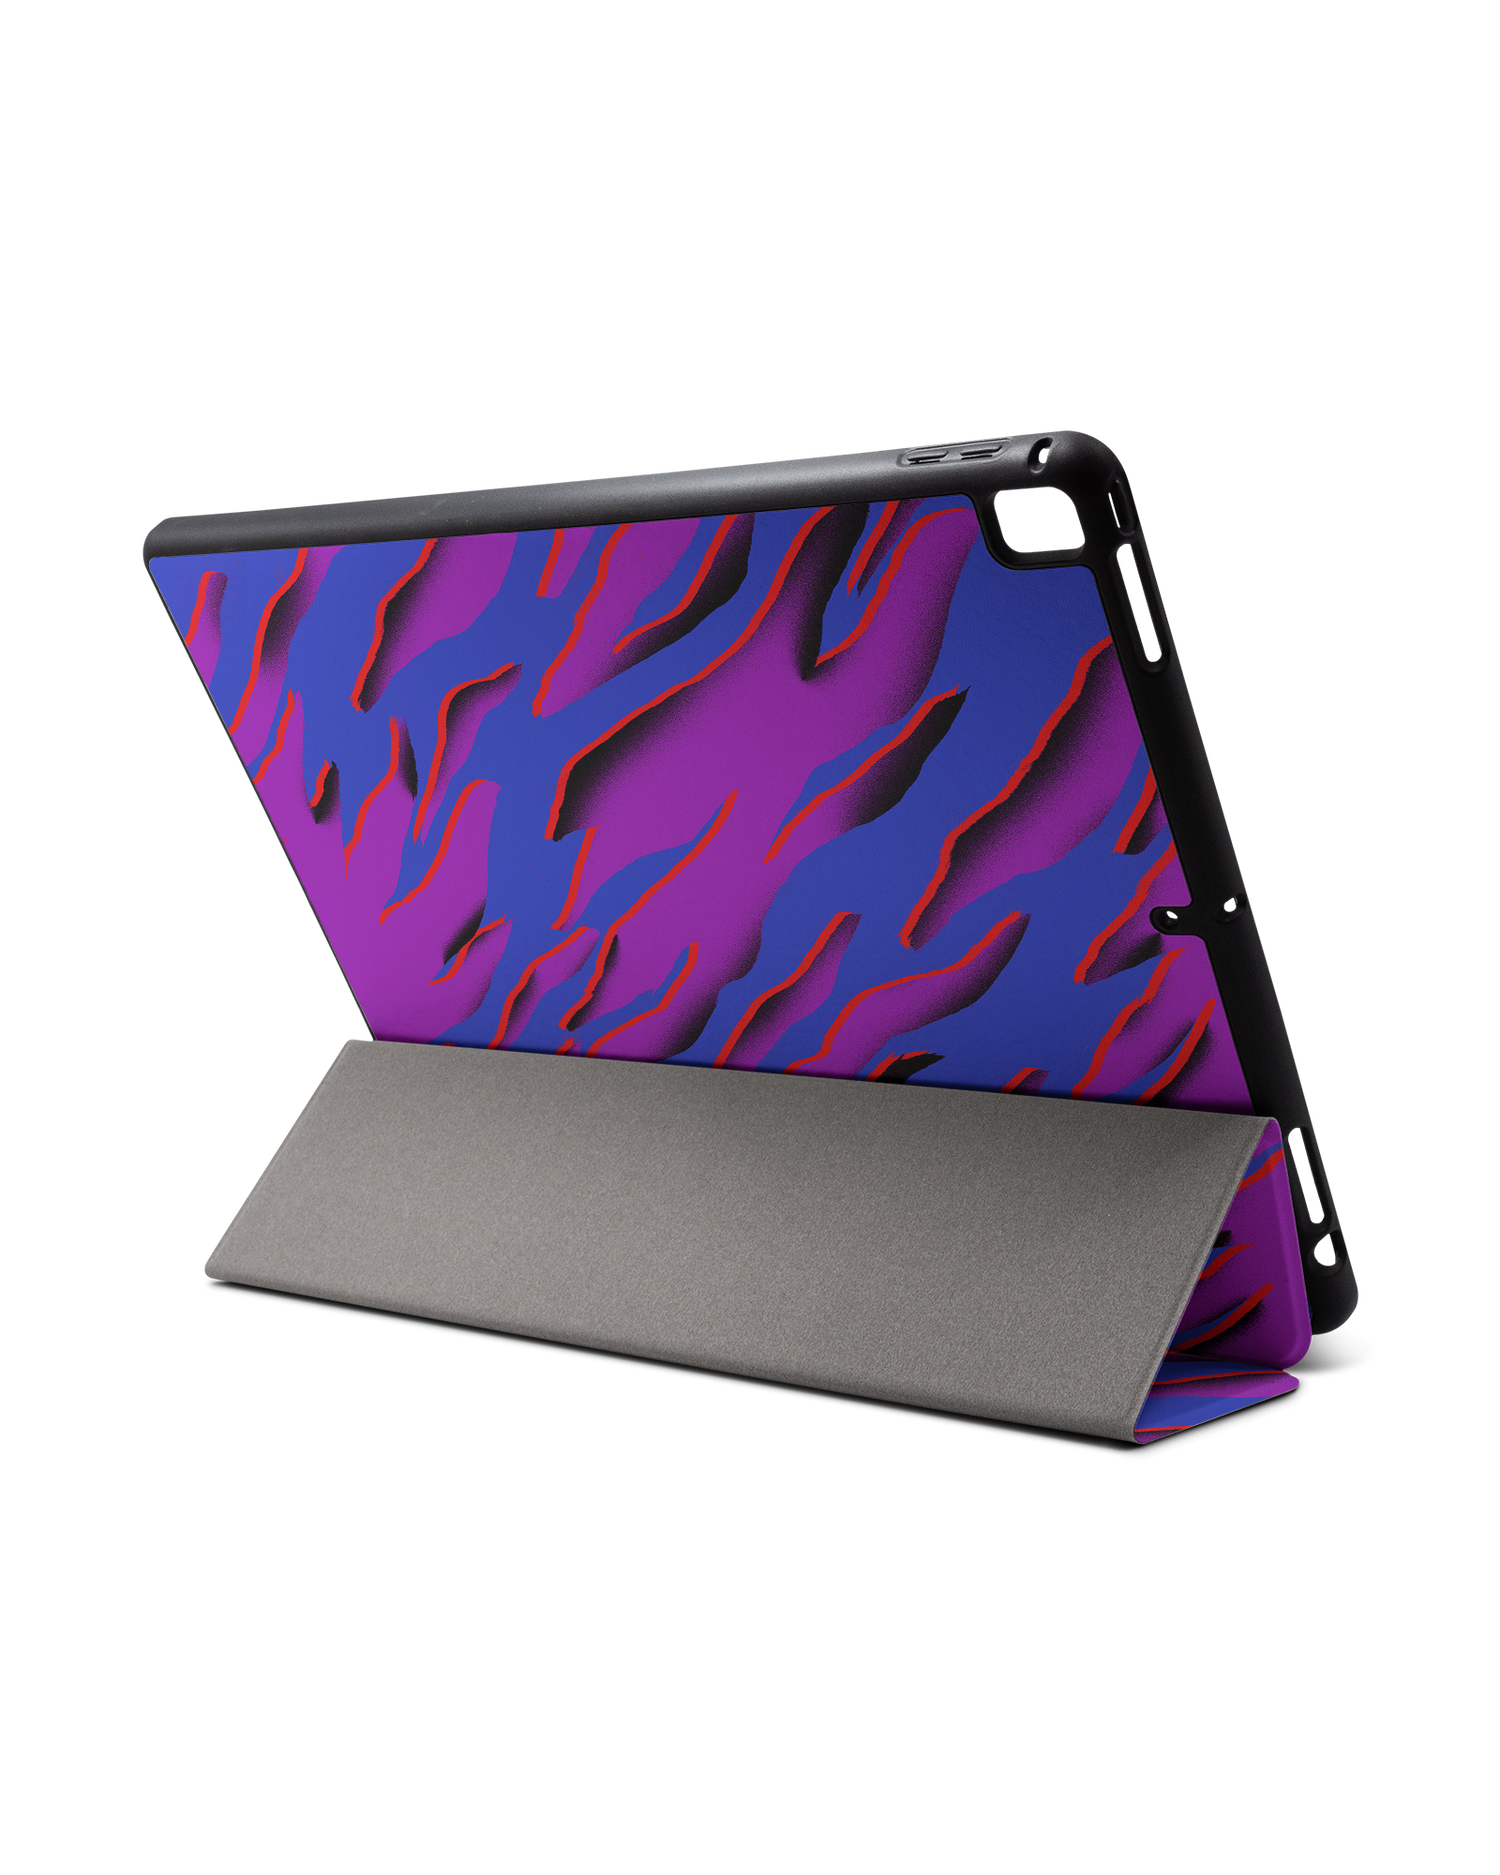 Electric Ocean 2 iPad Hülle mit Stifthalter für Apple iPad Pro 2 12.9'' (2017): Aufgestellt im Querformat von hinten